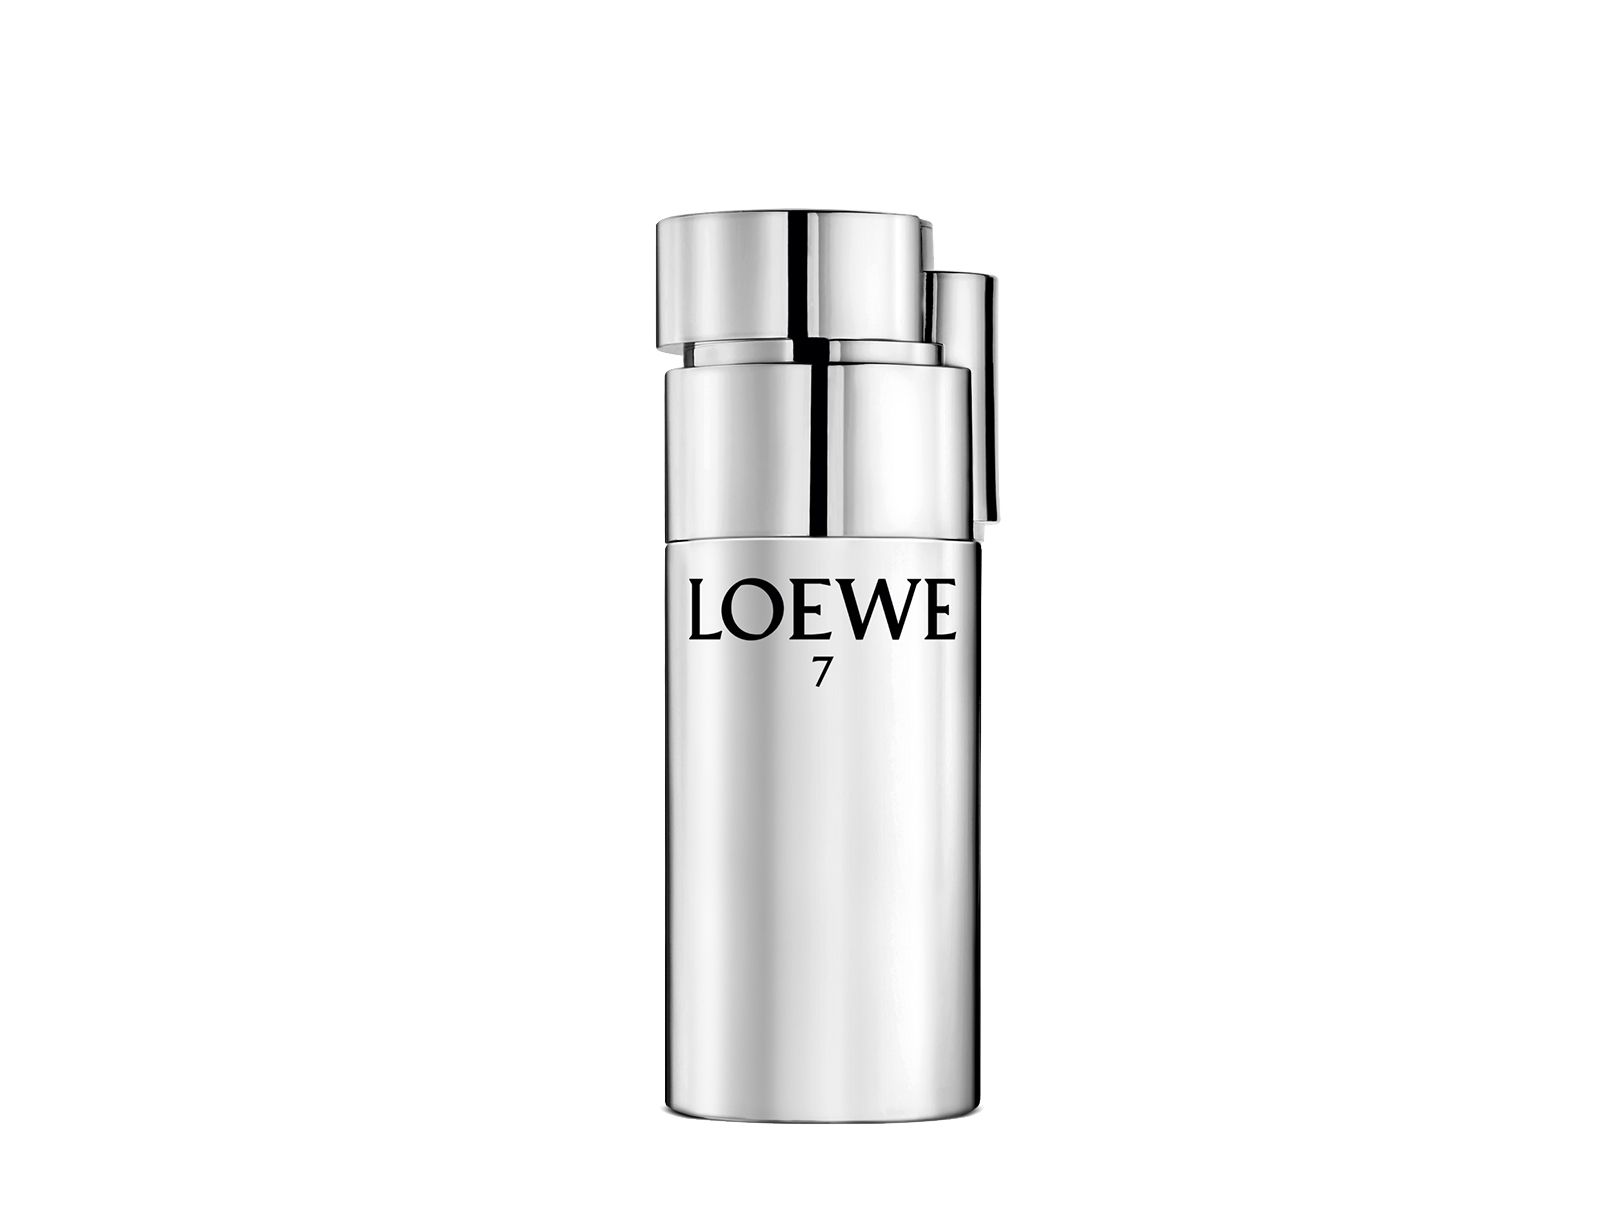 LOEWE Perfumes presenta Loewe 7 Plata